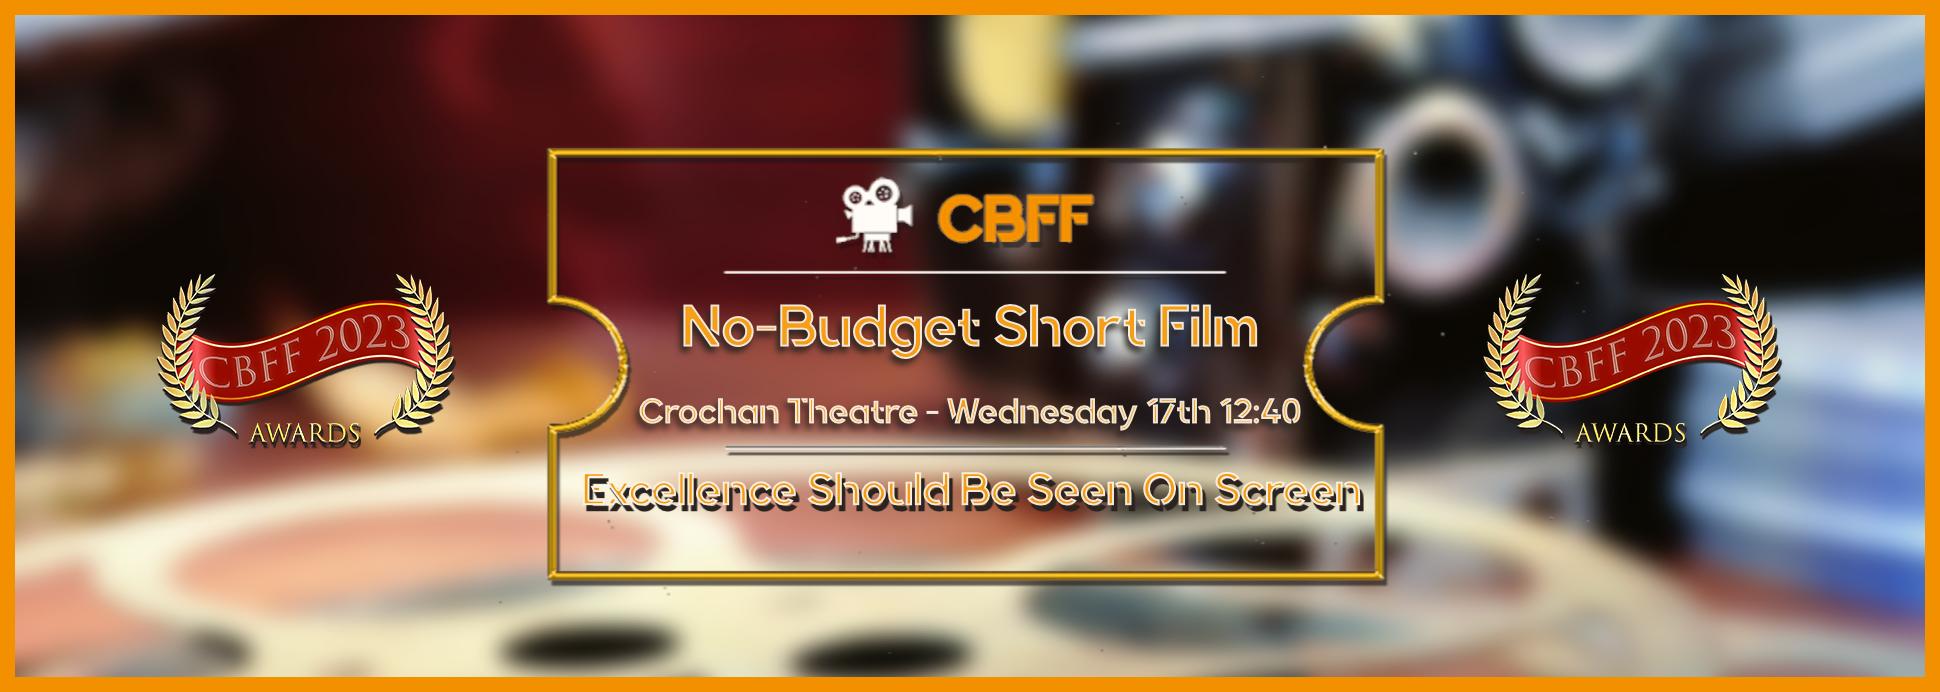 Crochan Theatre - No-Budget Short Film 17th 12:40